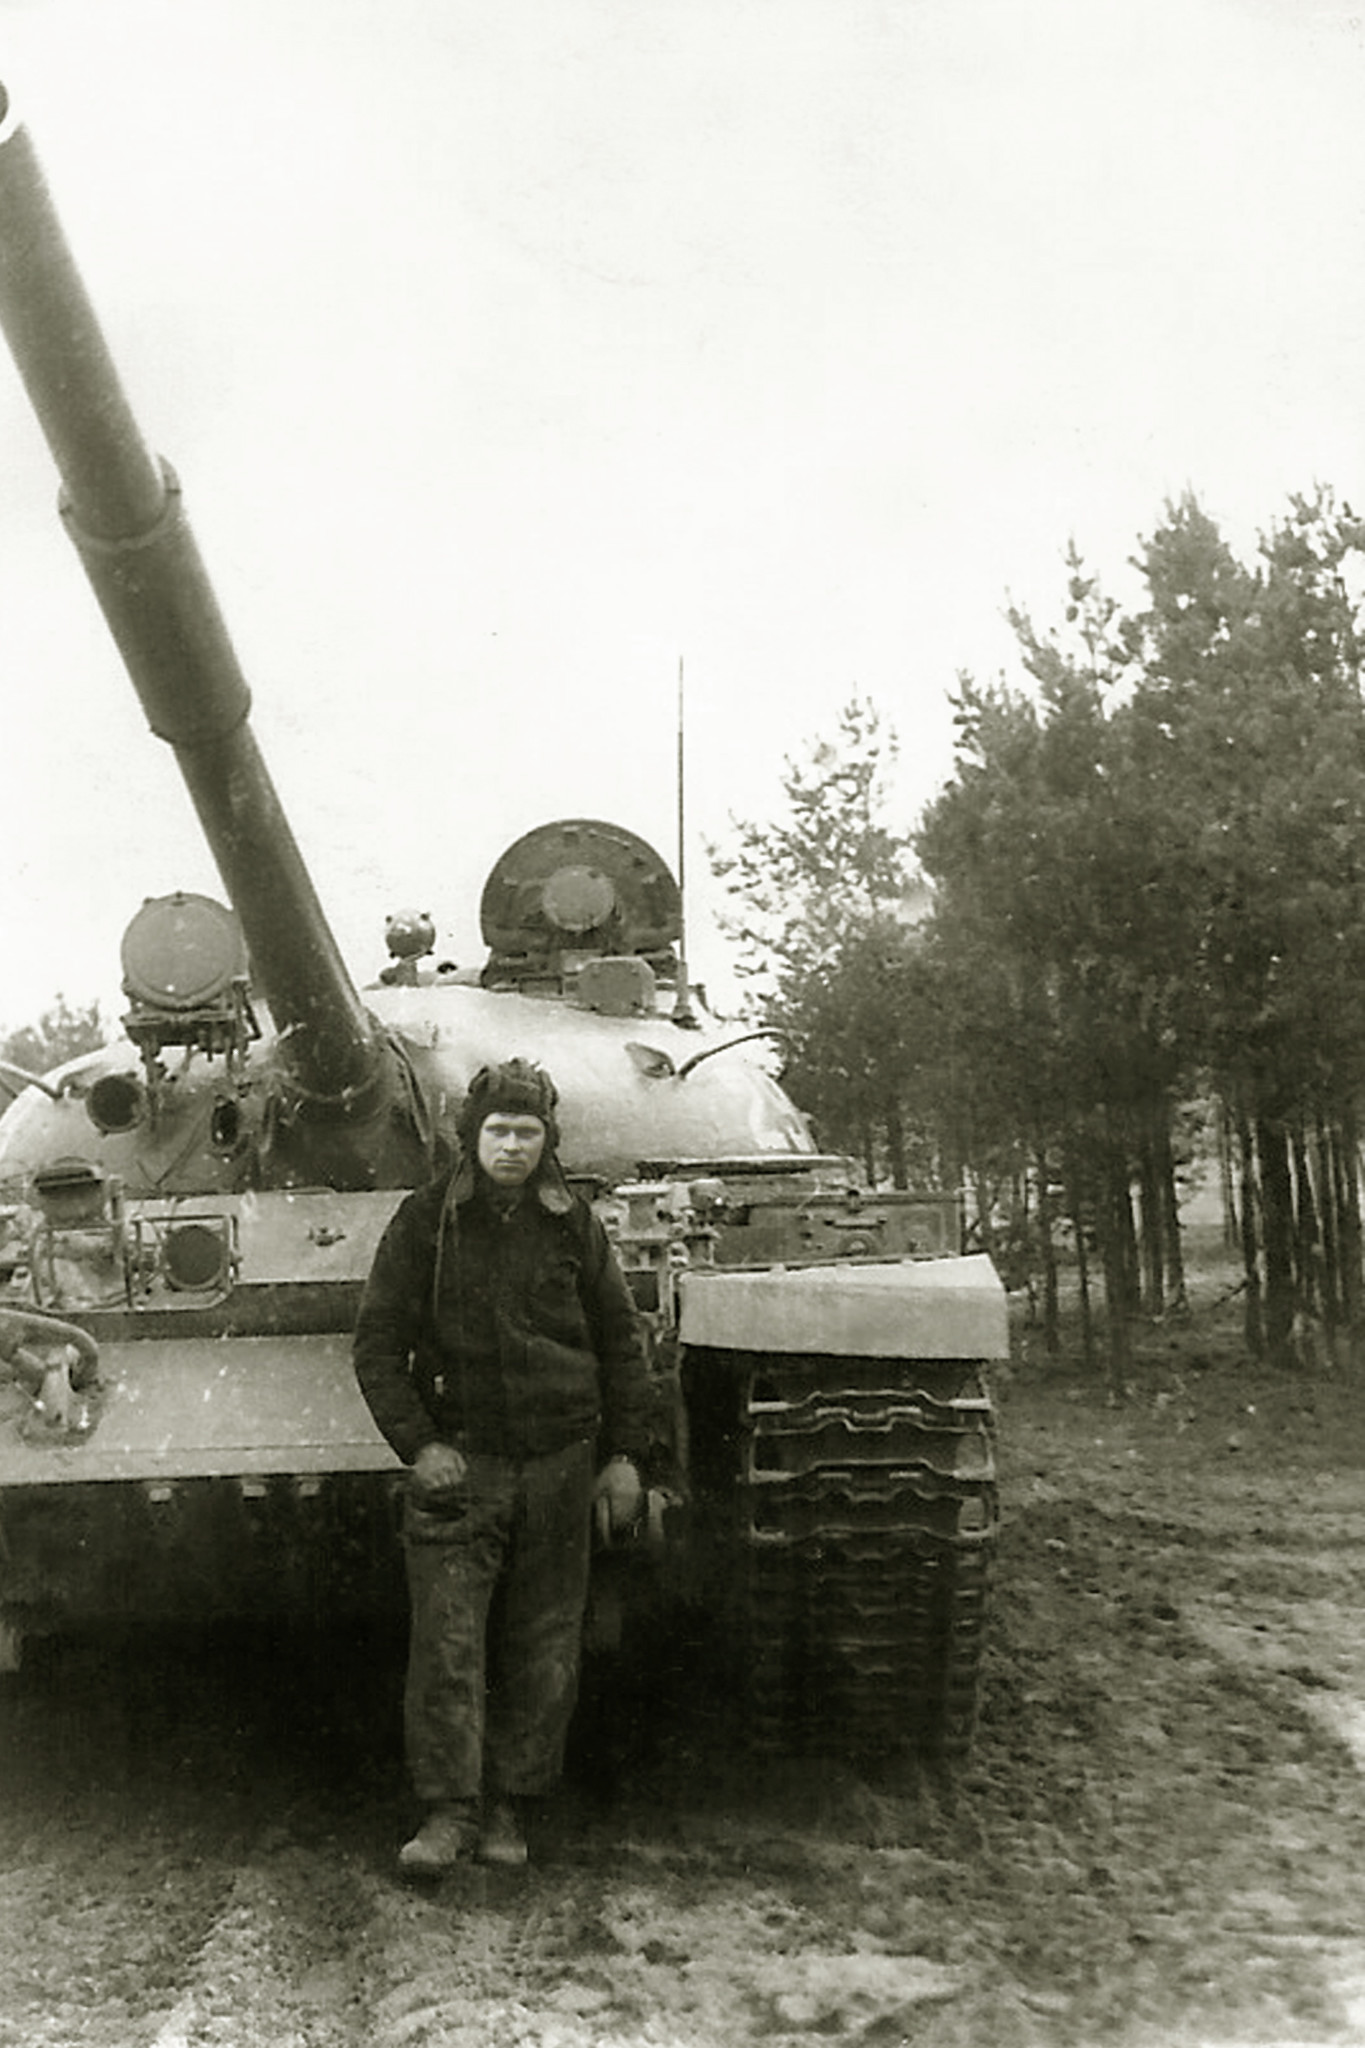 30 танковый полк оремов лаз